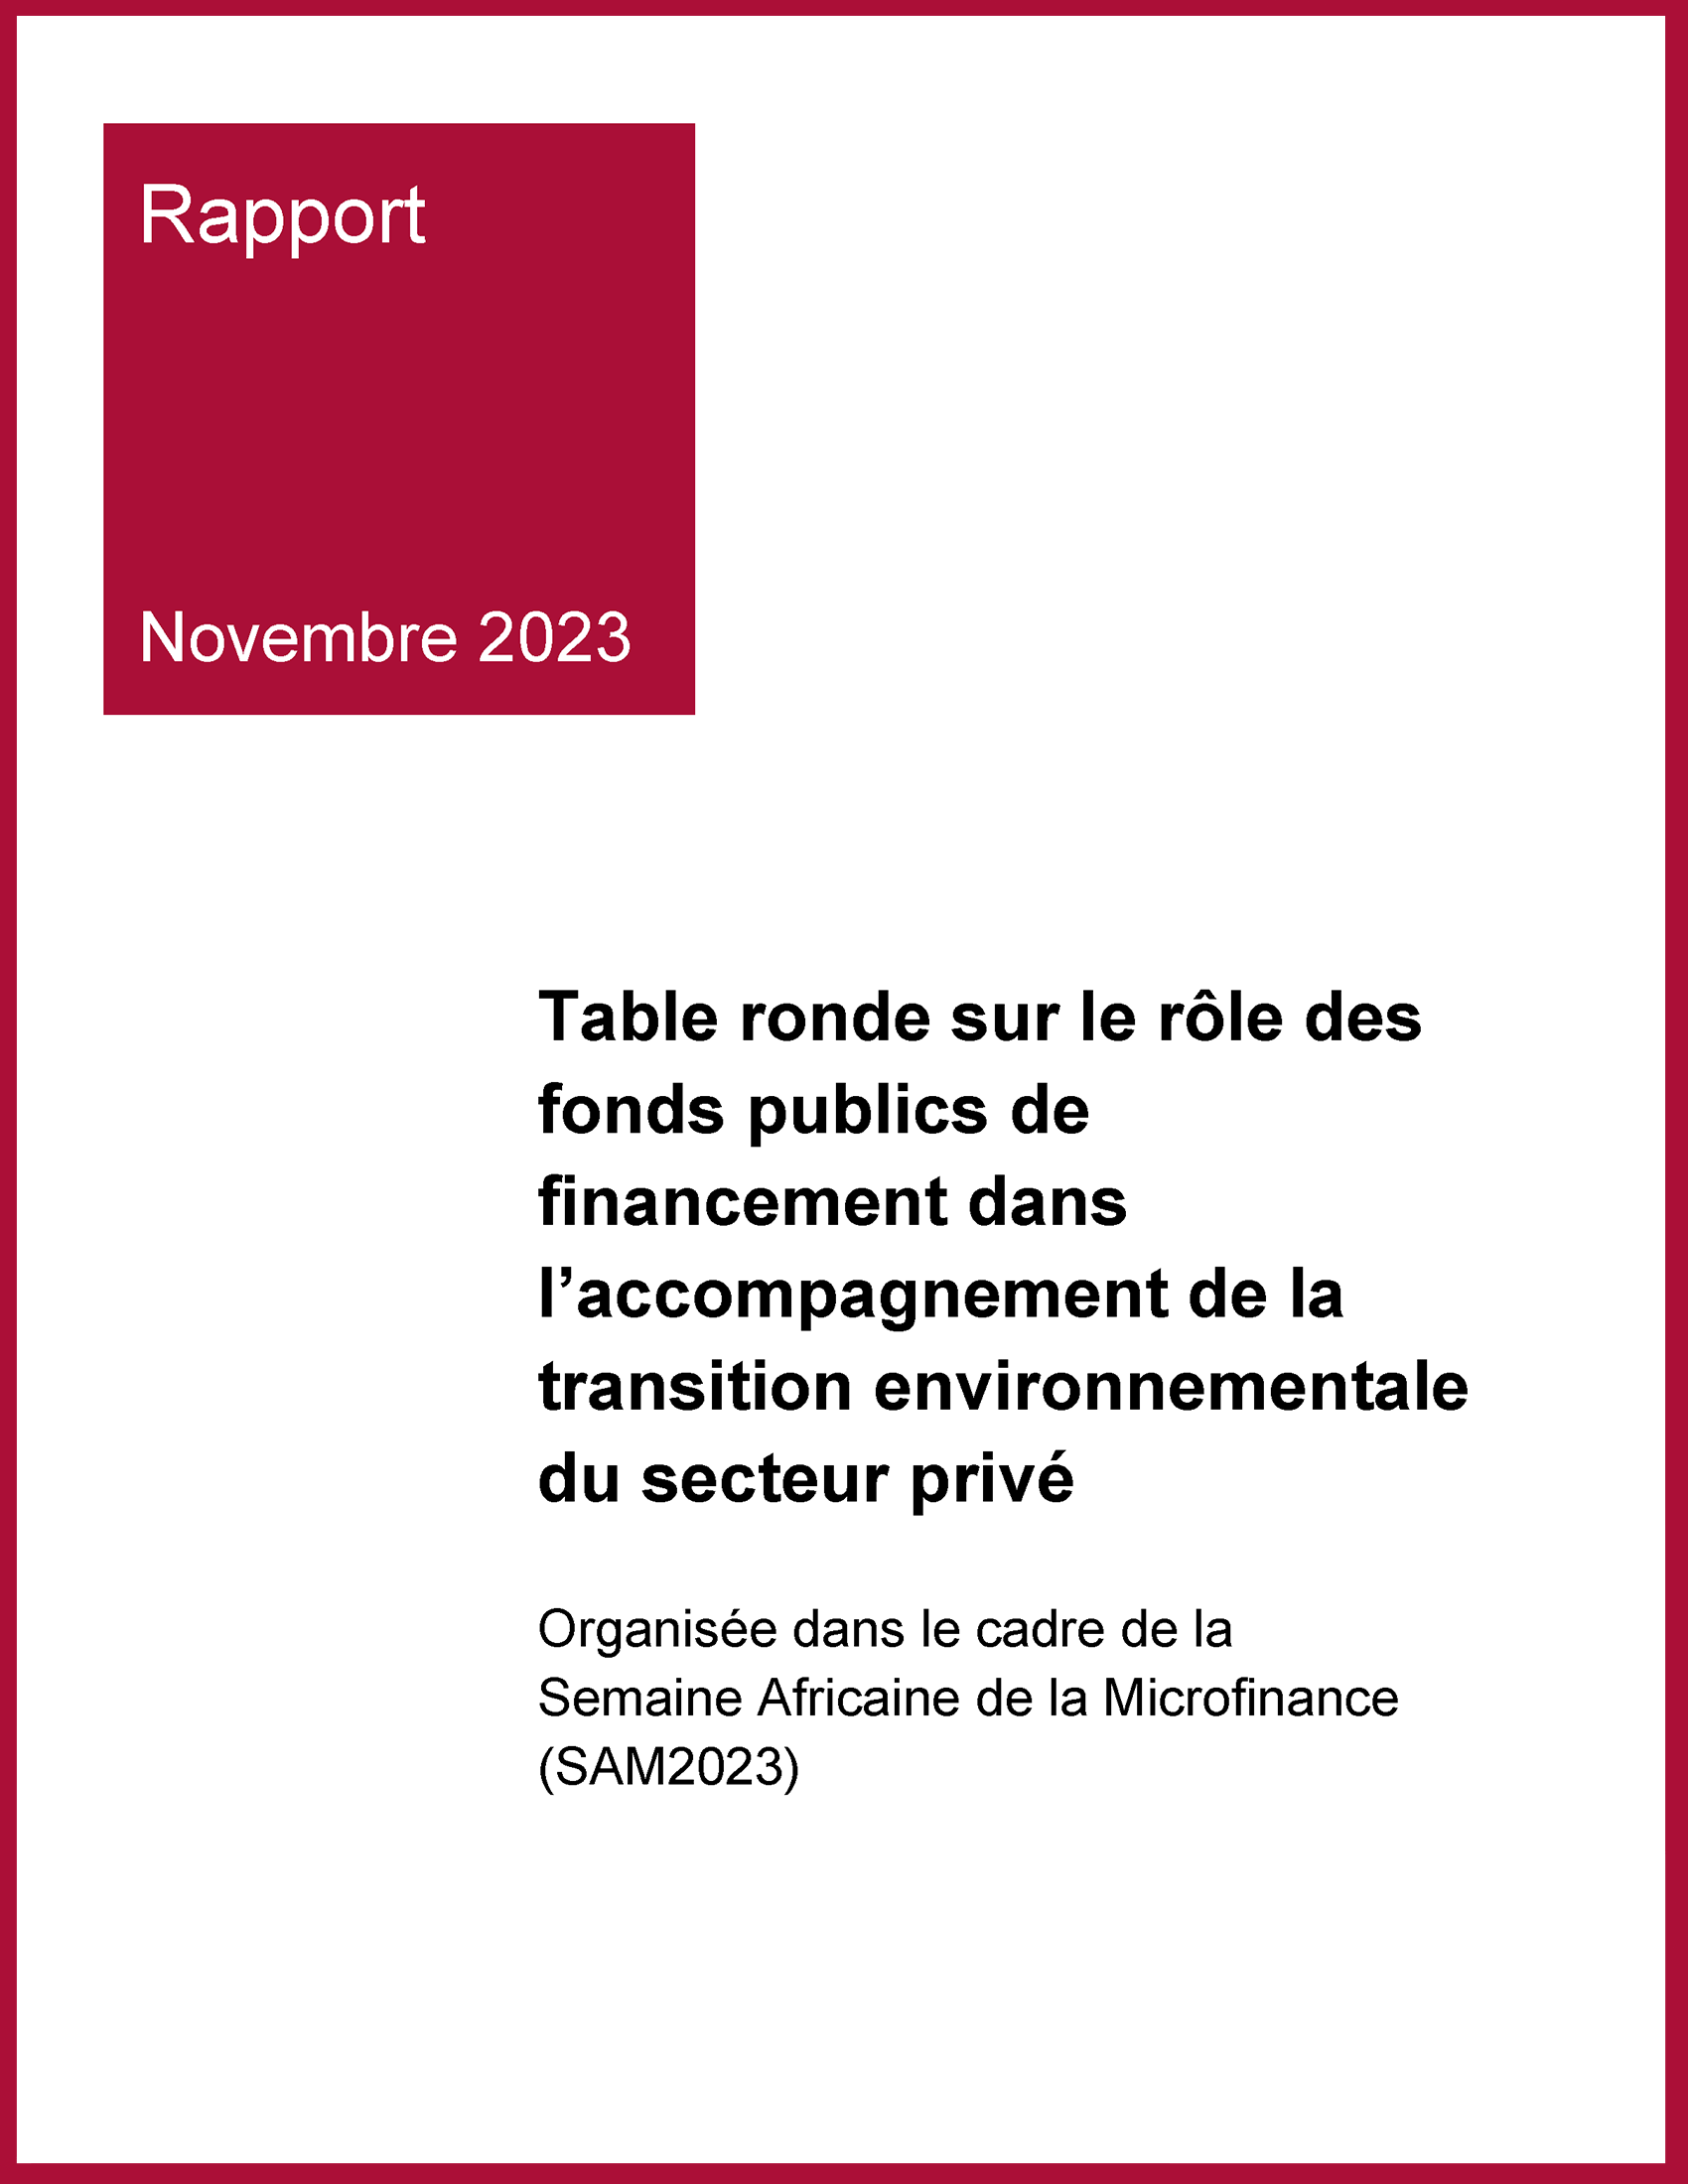 Cover_Rapport_table ronde sur le rôle des fonds publics de financement